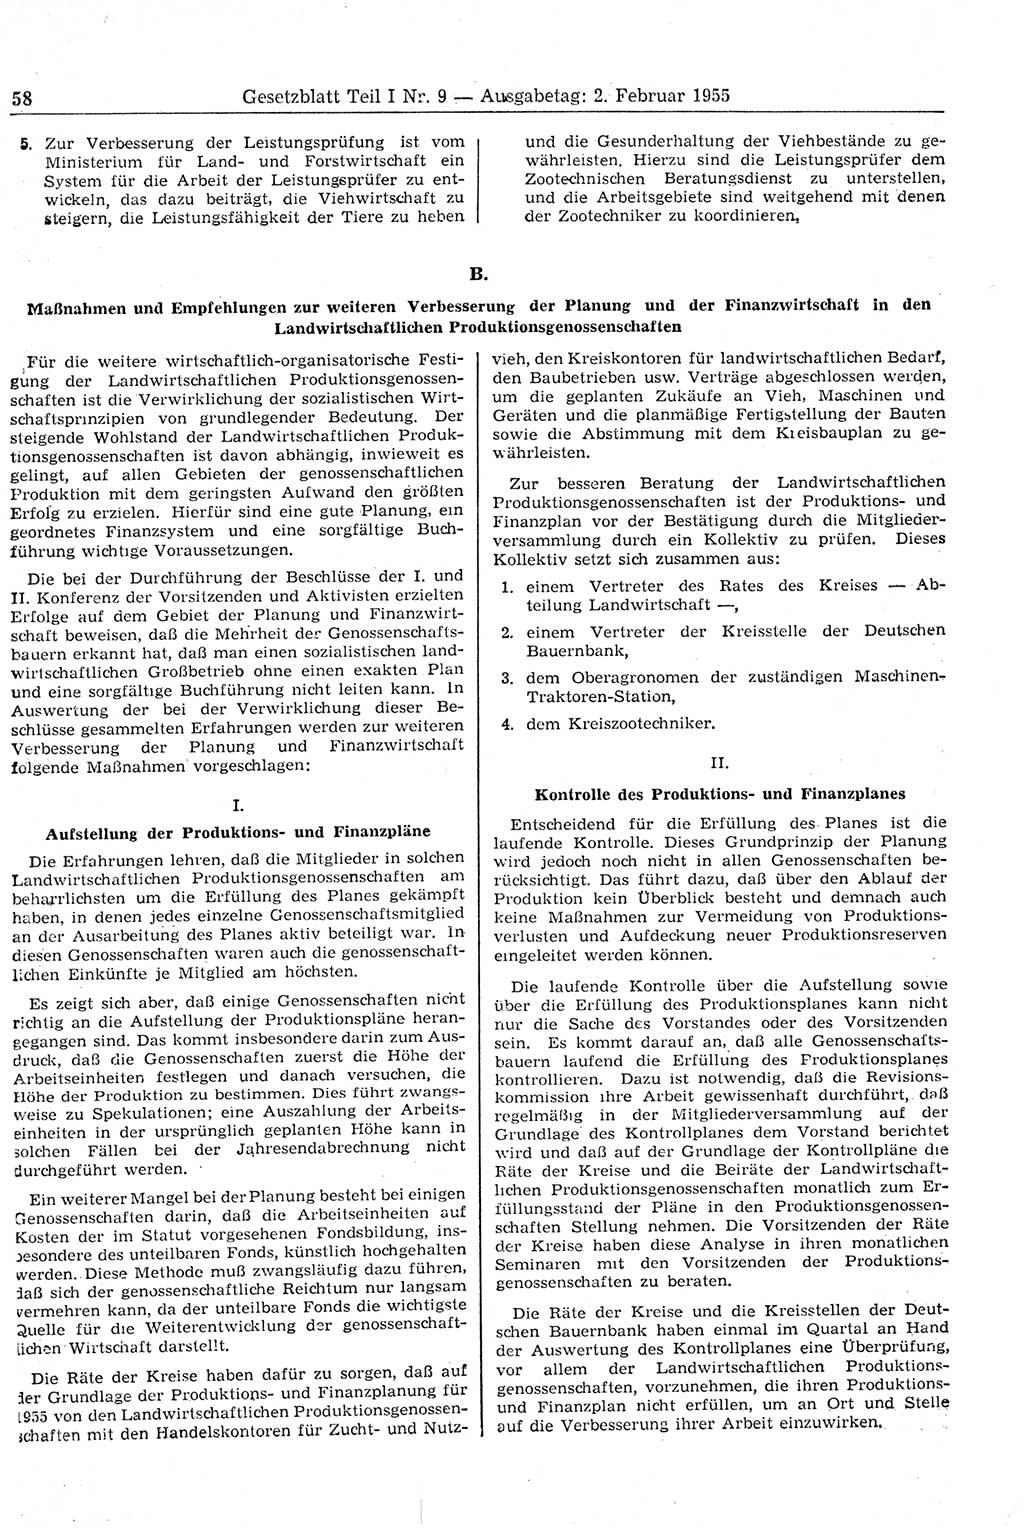 Gesetzblatt (GBl.) der Deutschen Demokratischen Republik (DDR) Teil Ⅰ 1955, Seite 58 (GBl. DDR Ⅰ 1955, S. 58)